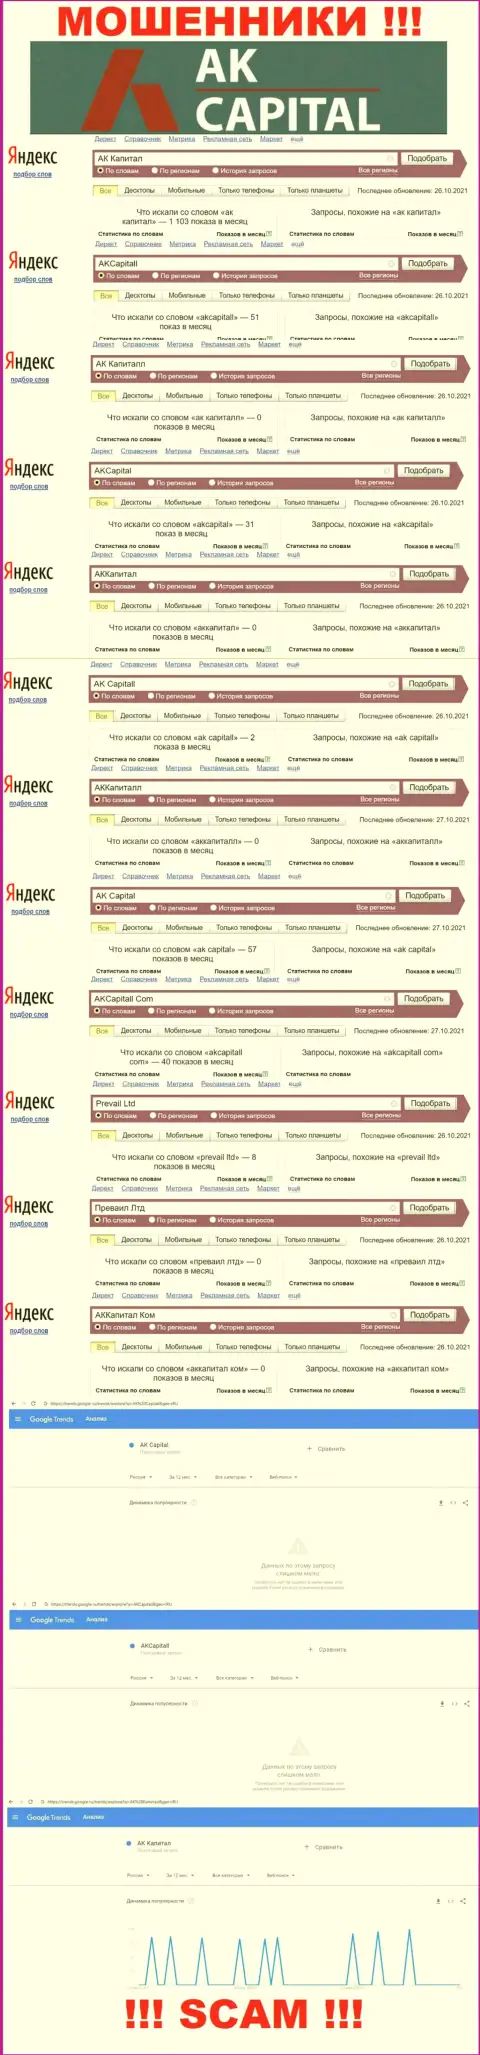 Количество поисковых запросов пользователями интернет сети информации об мошенниках AK Capital